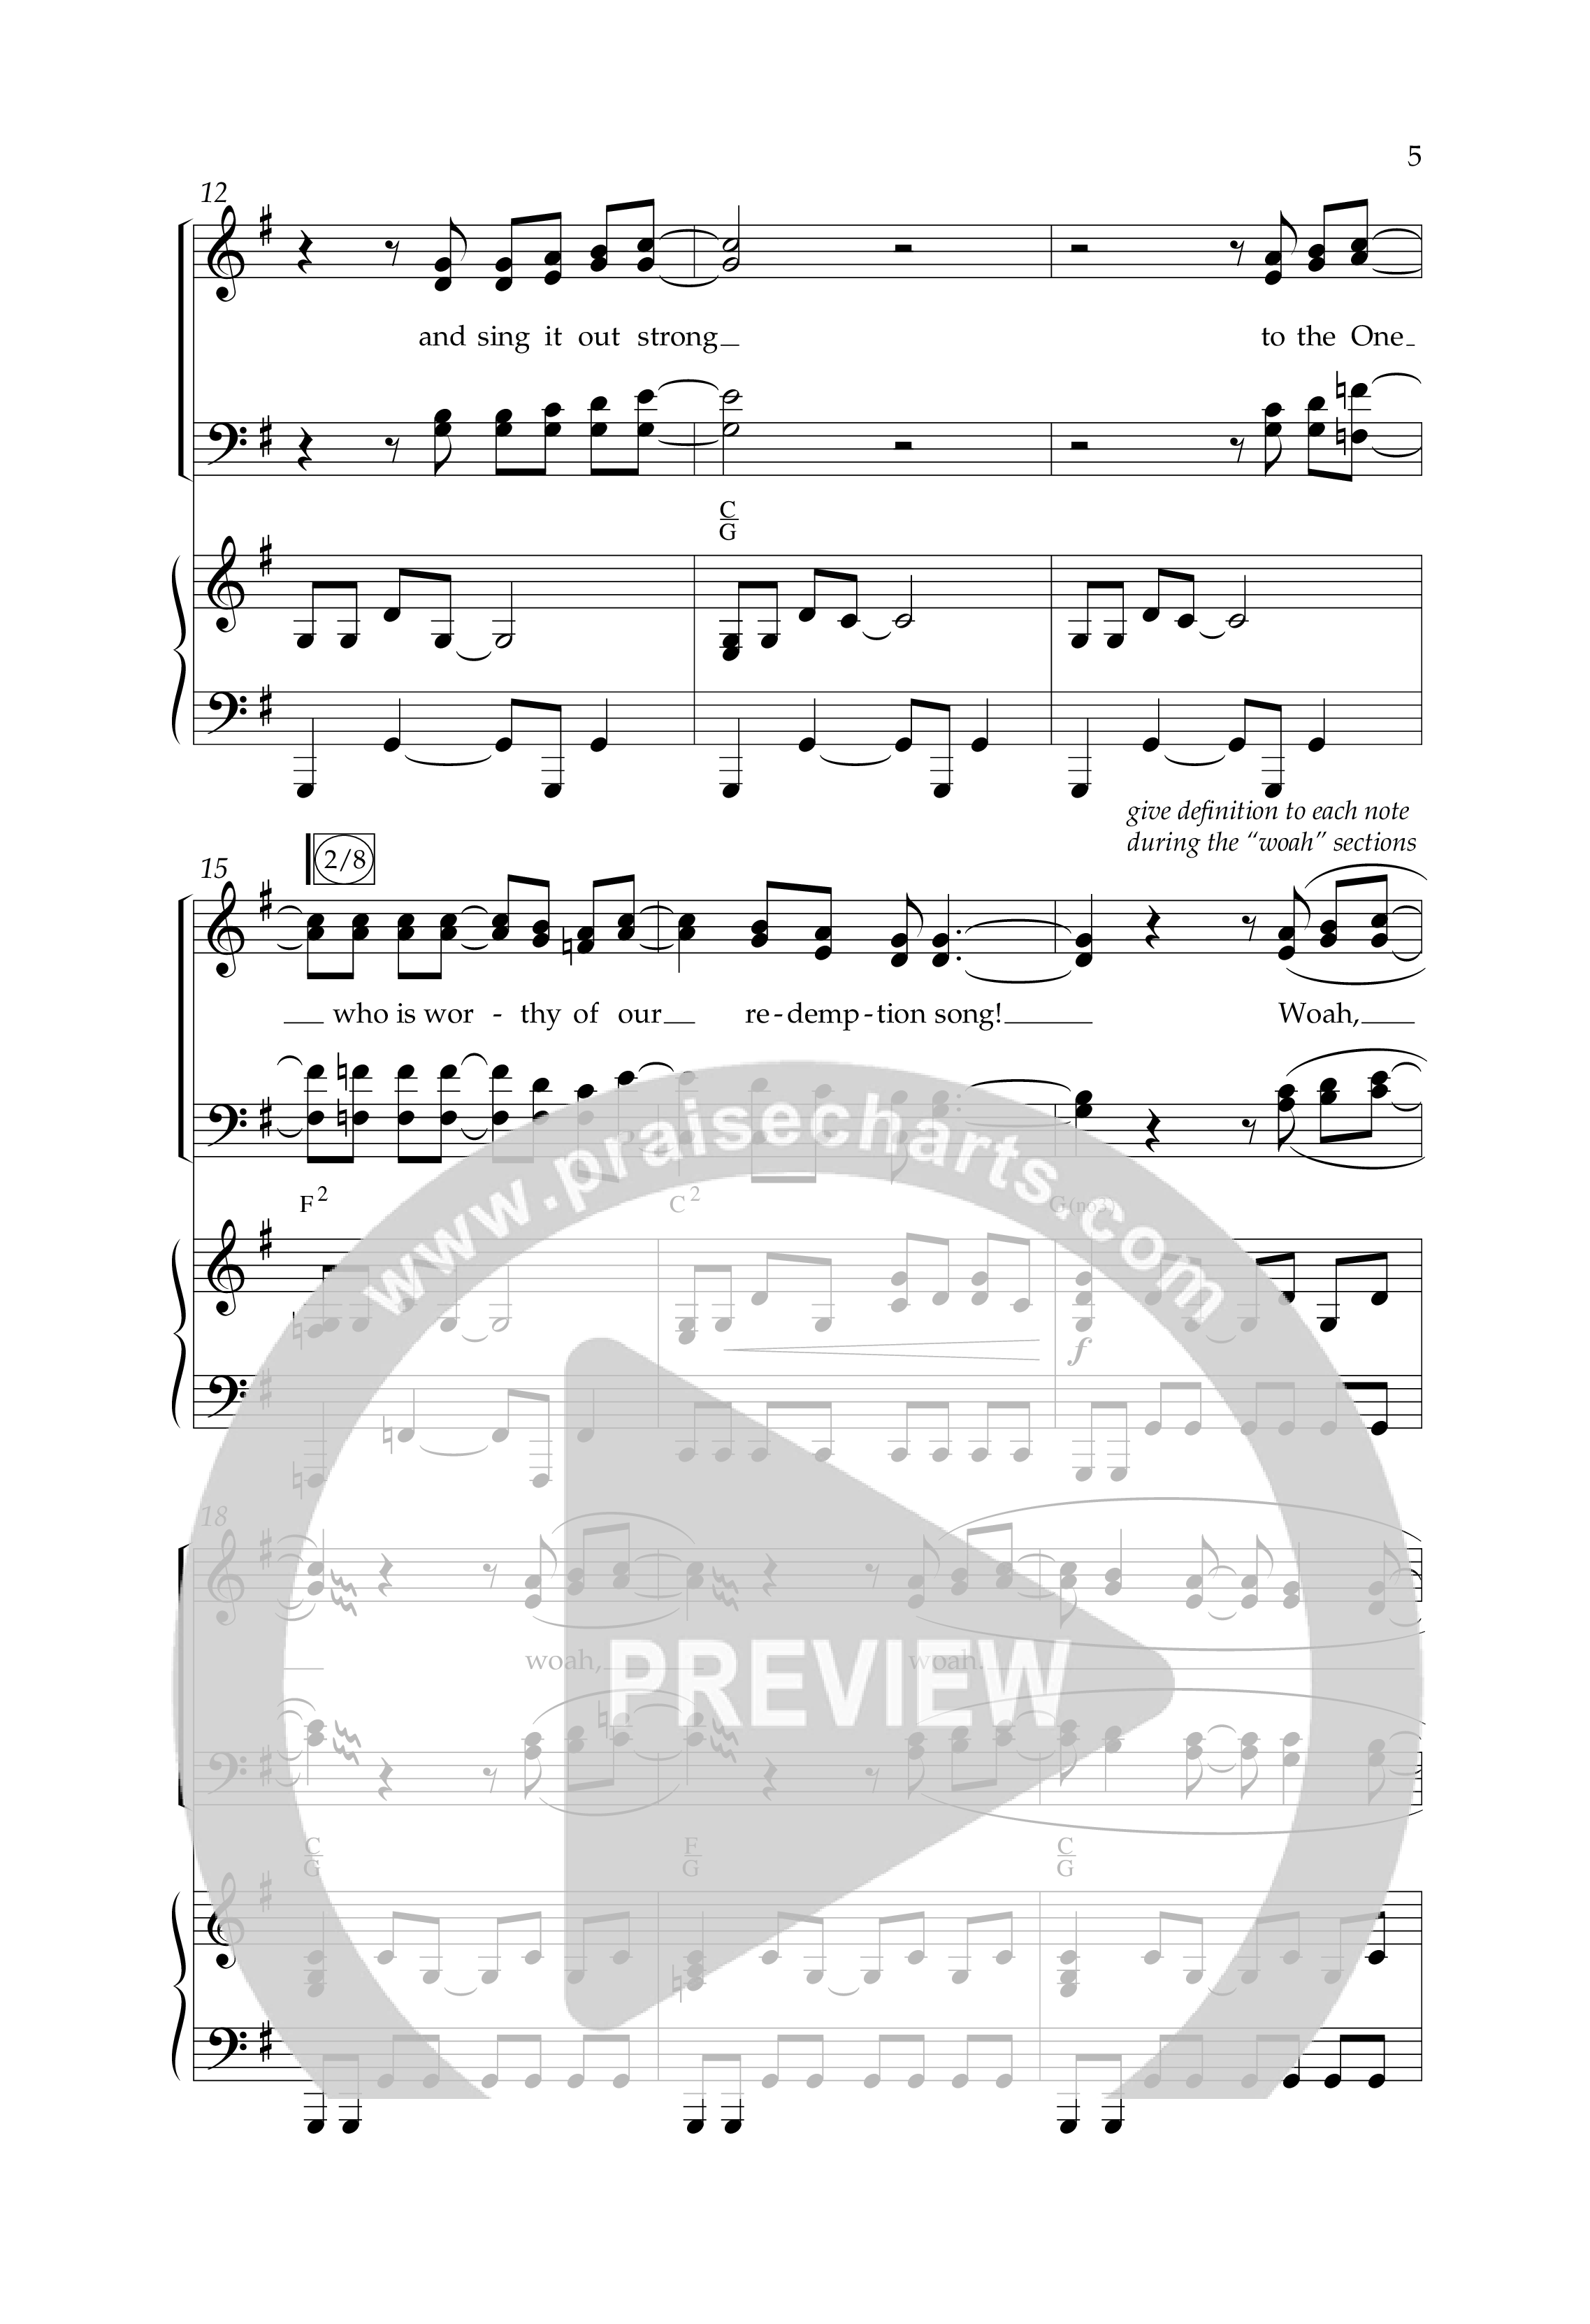 Redemption Song (Choral Anthem SATB) Anthem (SATB/Piano) (Lifeway Choral / Arr. Cliff Duren)